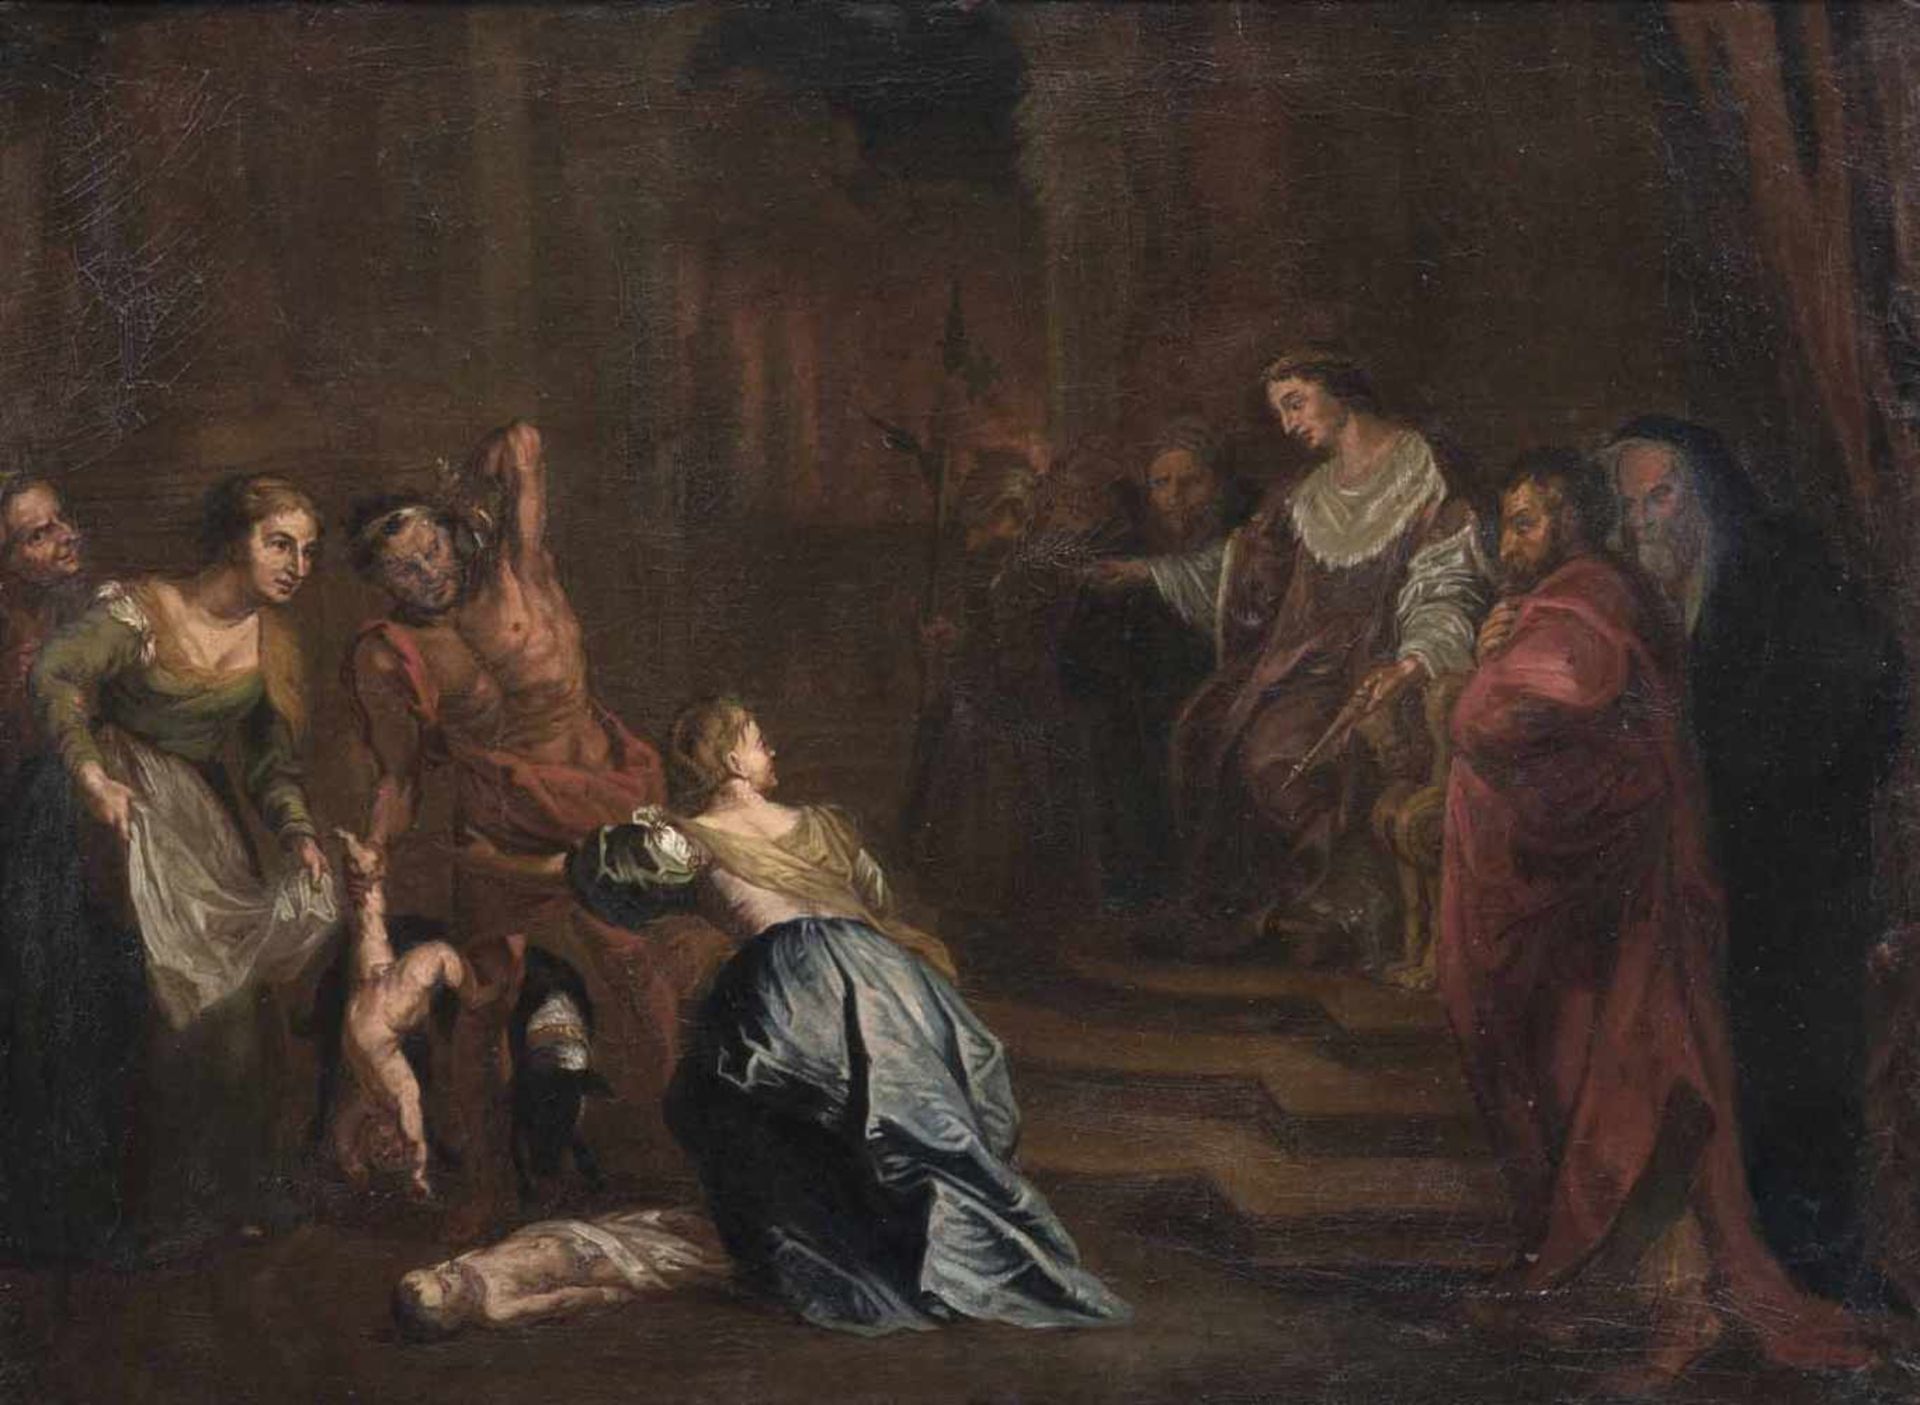 Rubens, Peter Paul (nach)Siegen 1577 - Antwerpen 164075 x 100 cmDas Urteil des Salomo. Öl/Lwd./Lwd.